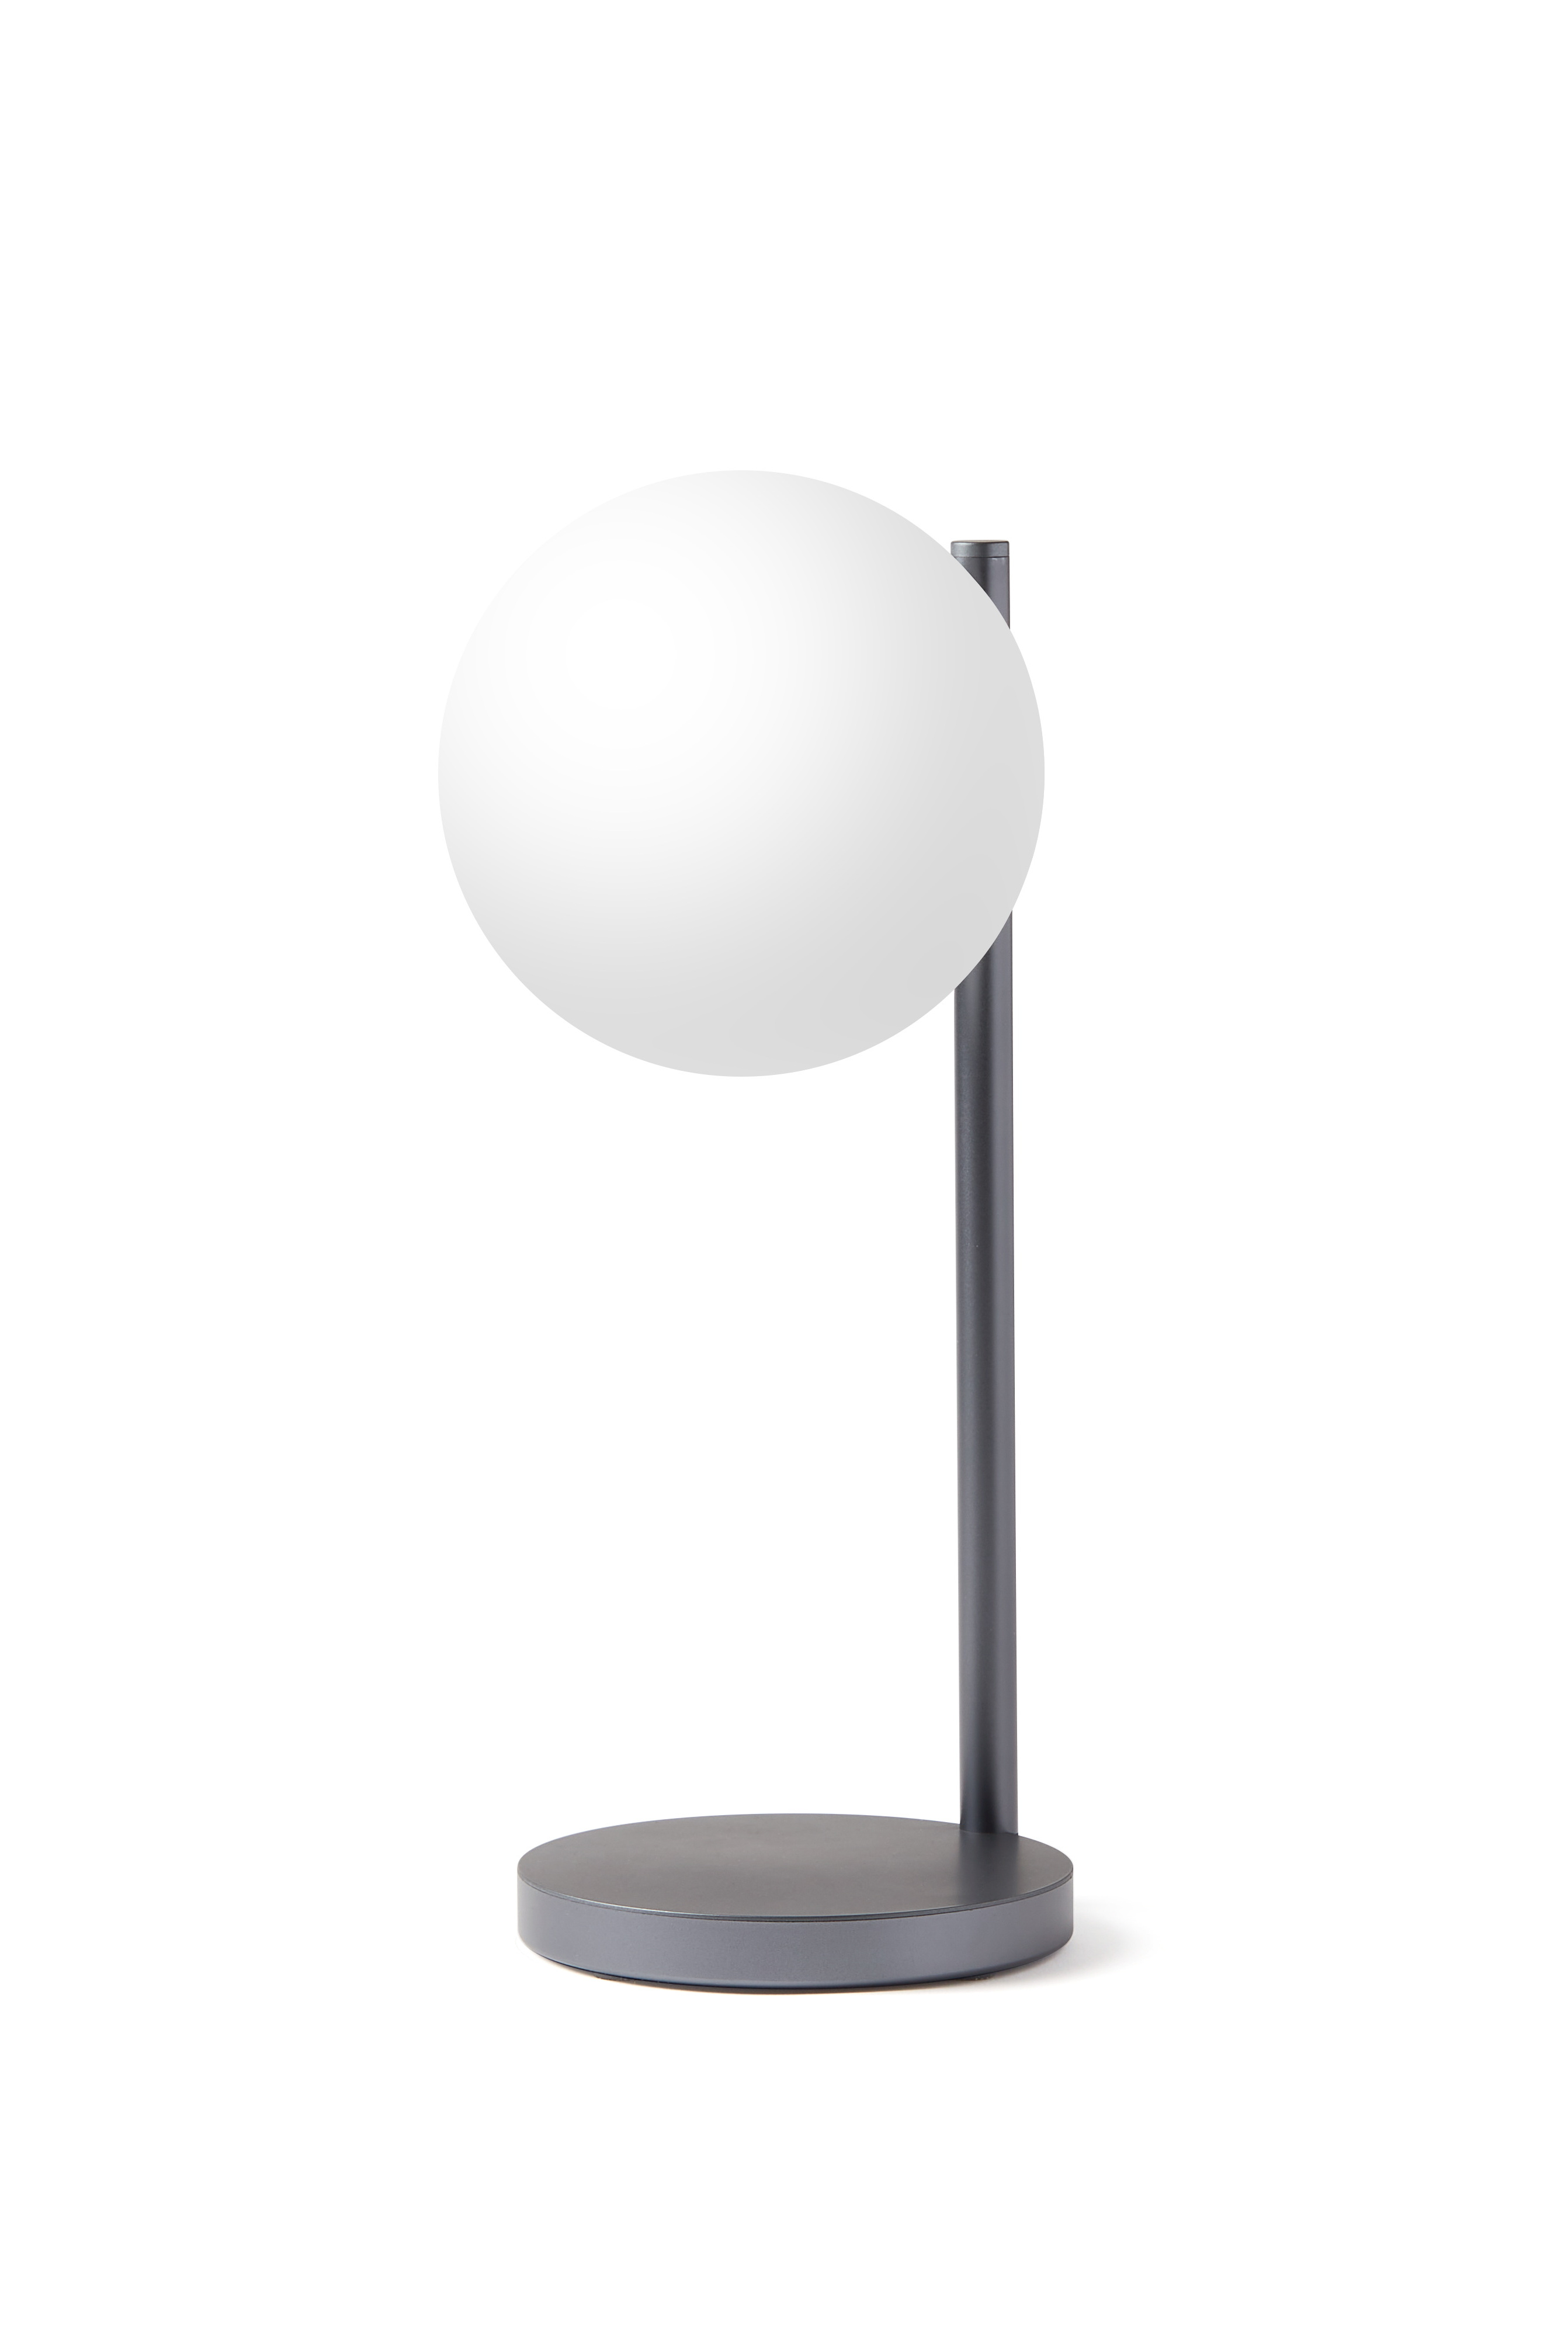 LEXON LED Lampe BUBBLE mit Induktionsladefläche LH70X